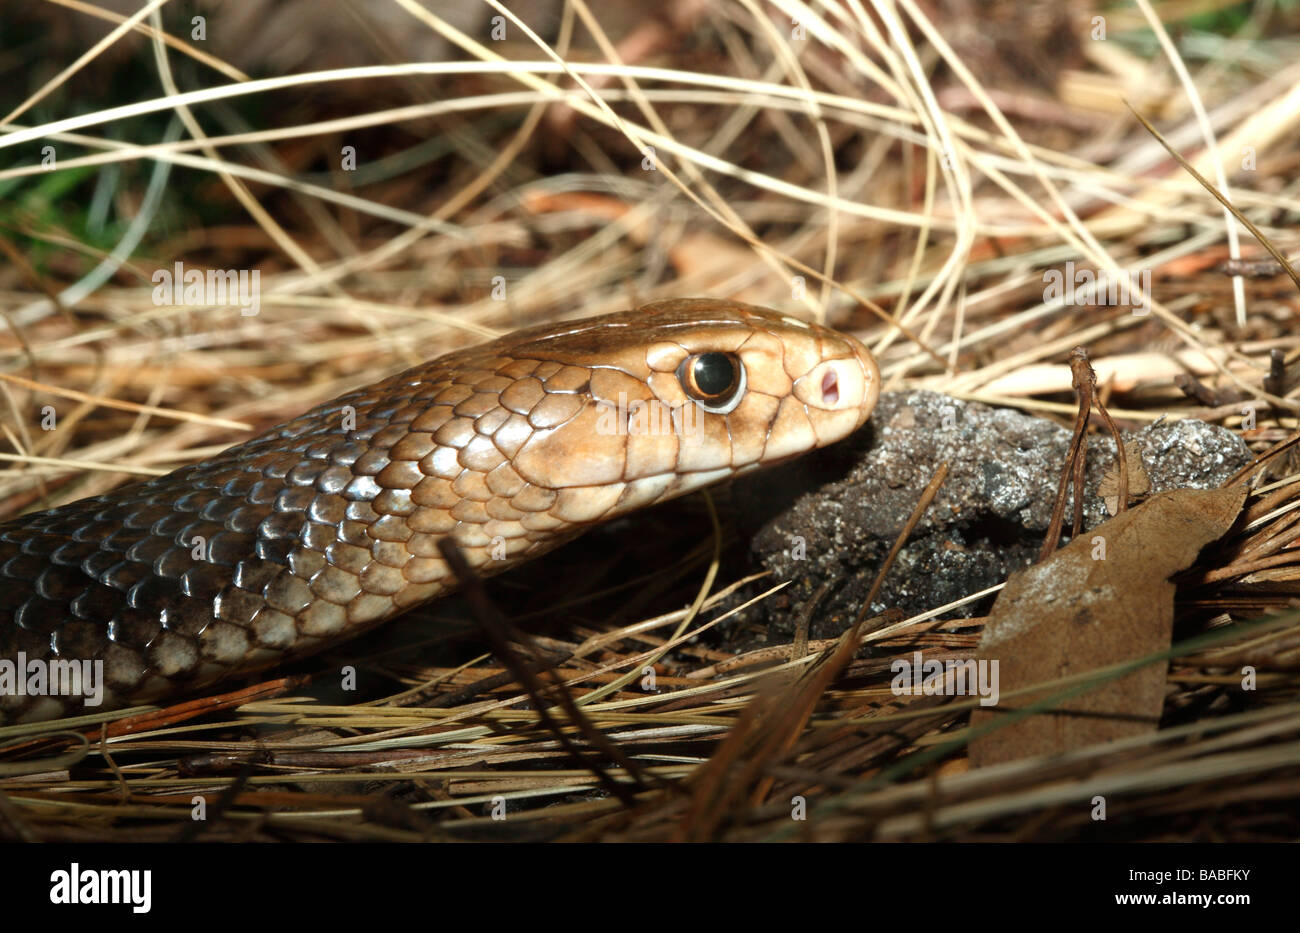 L'Est de serpent brun, Pseudonaja textilis, également connu sous le nom de serpent brun commun. Ce serpent est considéré comme le deuxième plus venimeux serpent terrestre Banque D'Images